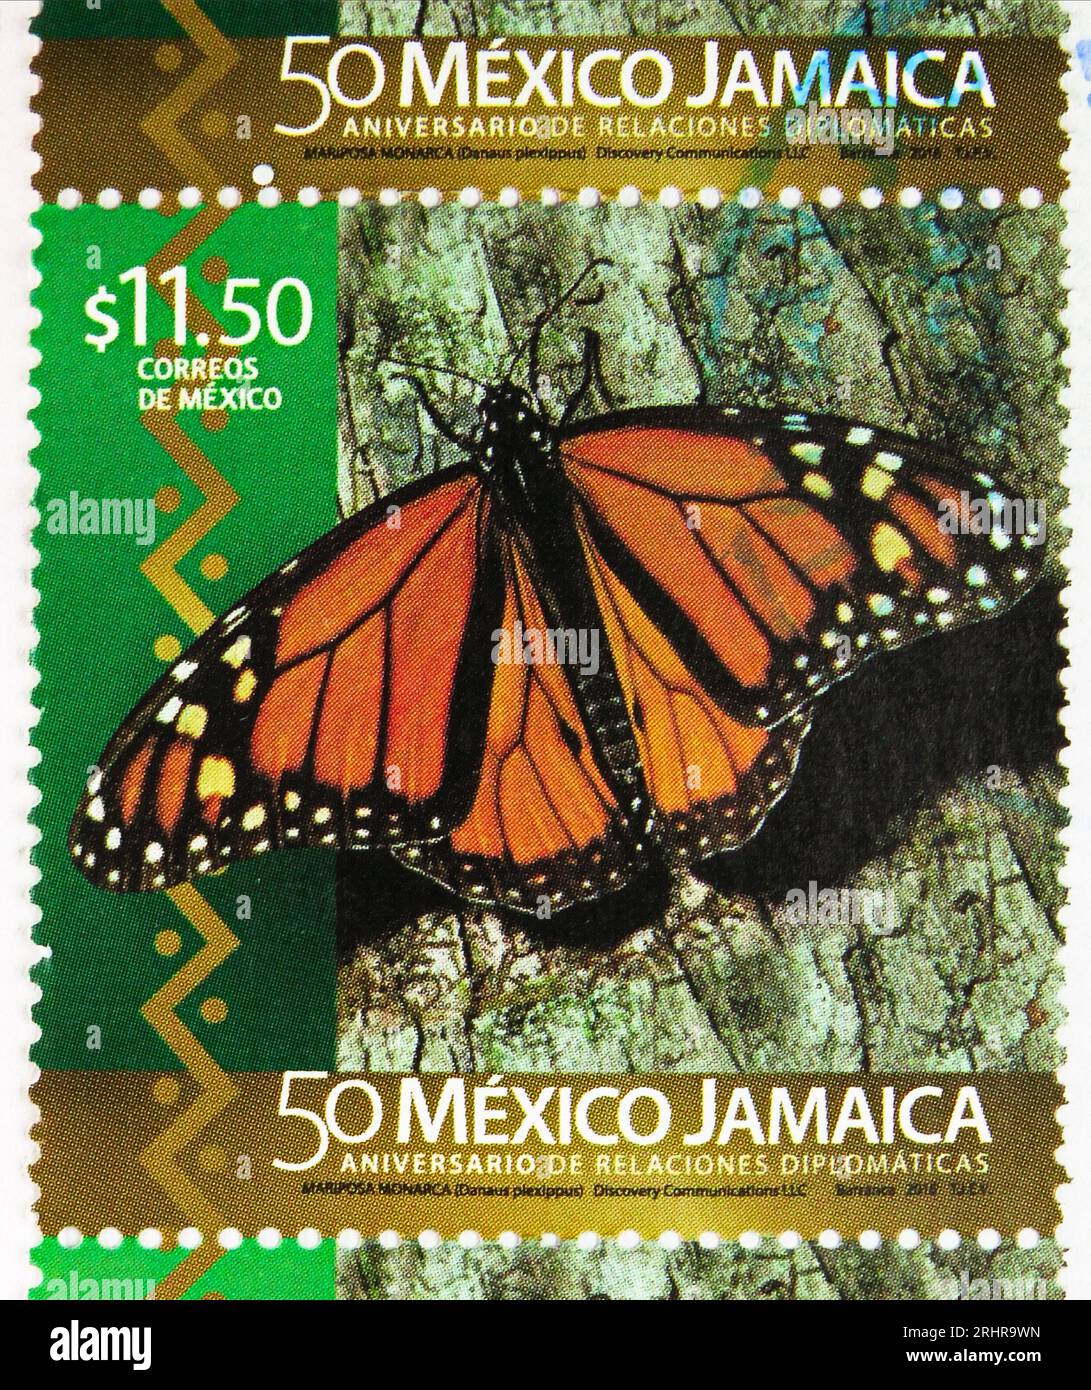 MOSCOU, RUSSIE - JUIN 8 2023 : timbre-poste imprimé au Mexique montrant Danaus plexippus, relations diplomatiques Mexique-Jamaïque, série 50e anniversaire, cir Banque D'Images